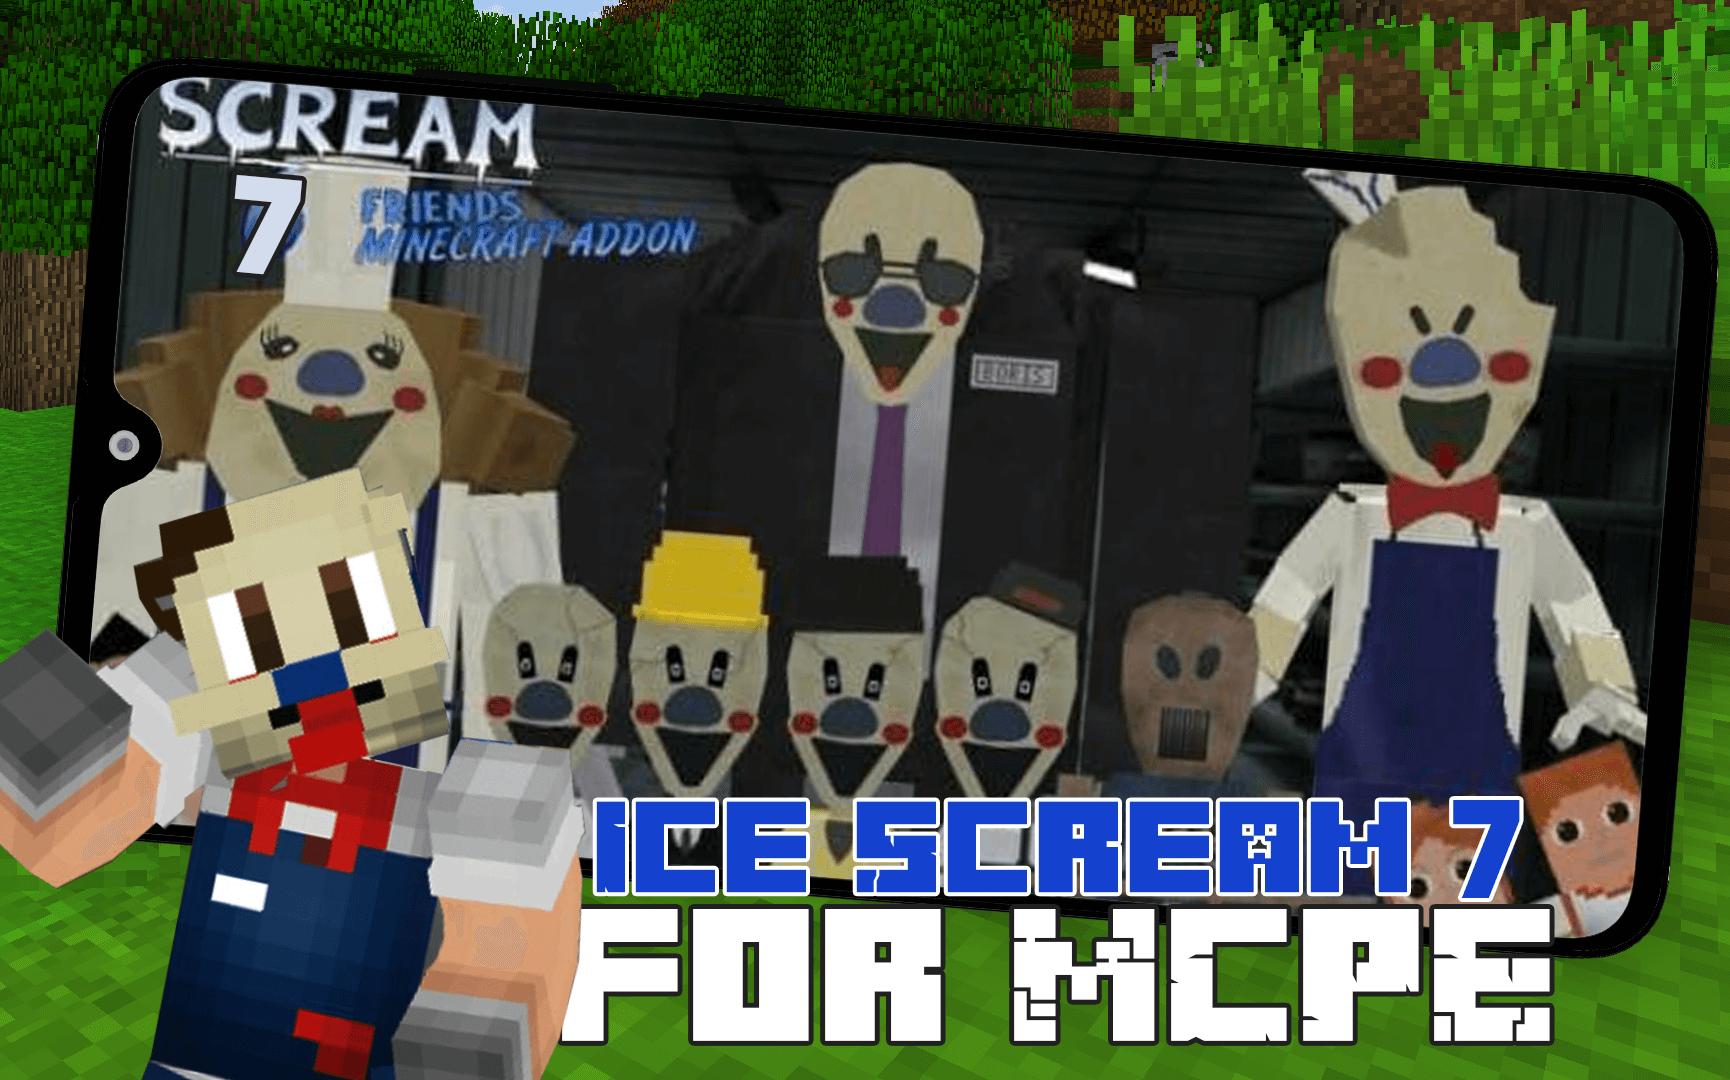 ice scream 7